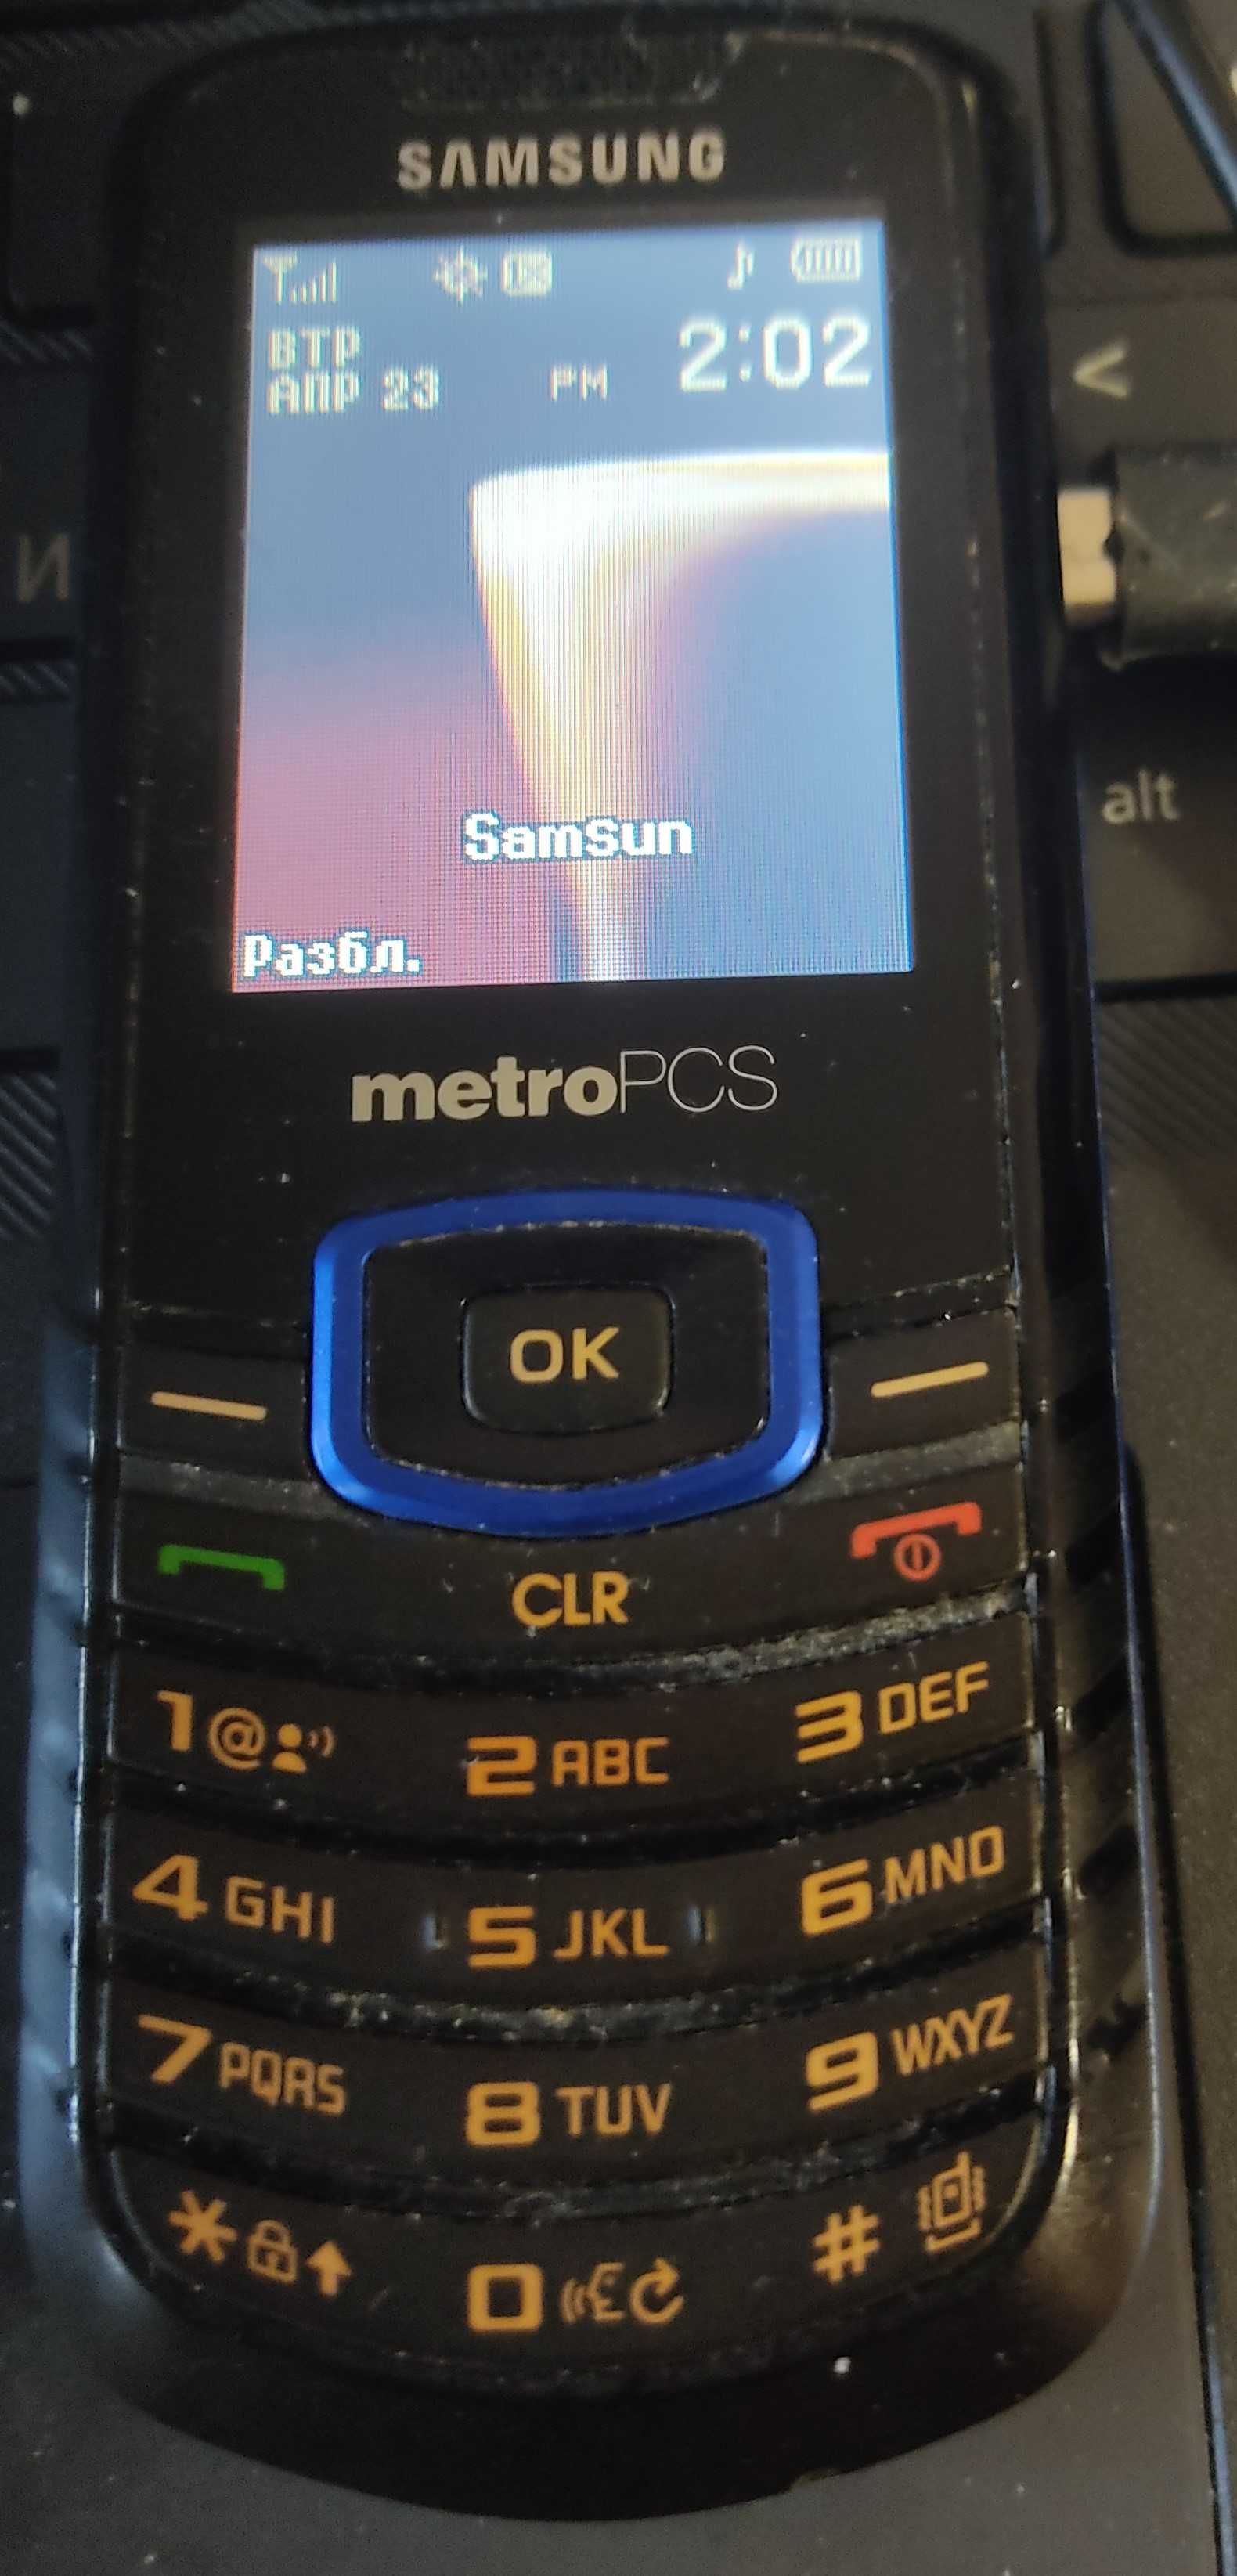 Телефон SAMSUNG SCH-R100  CDMA "Интертелеком"  прямой городской номер.